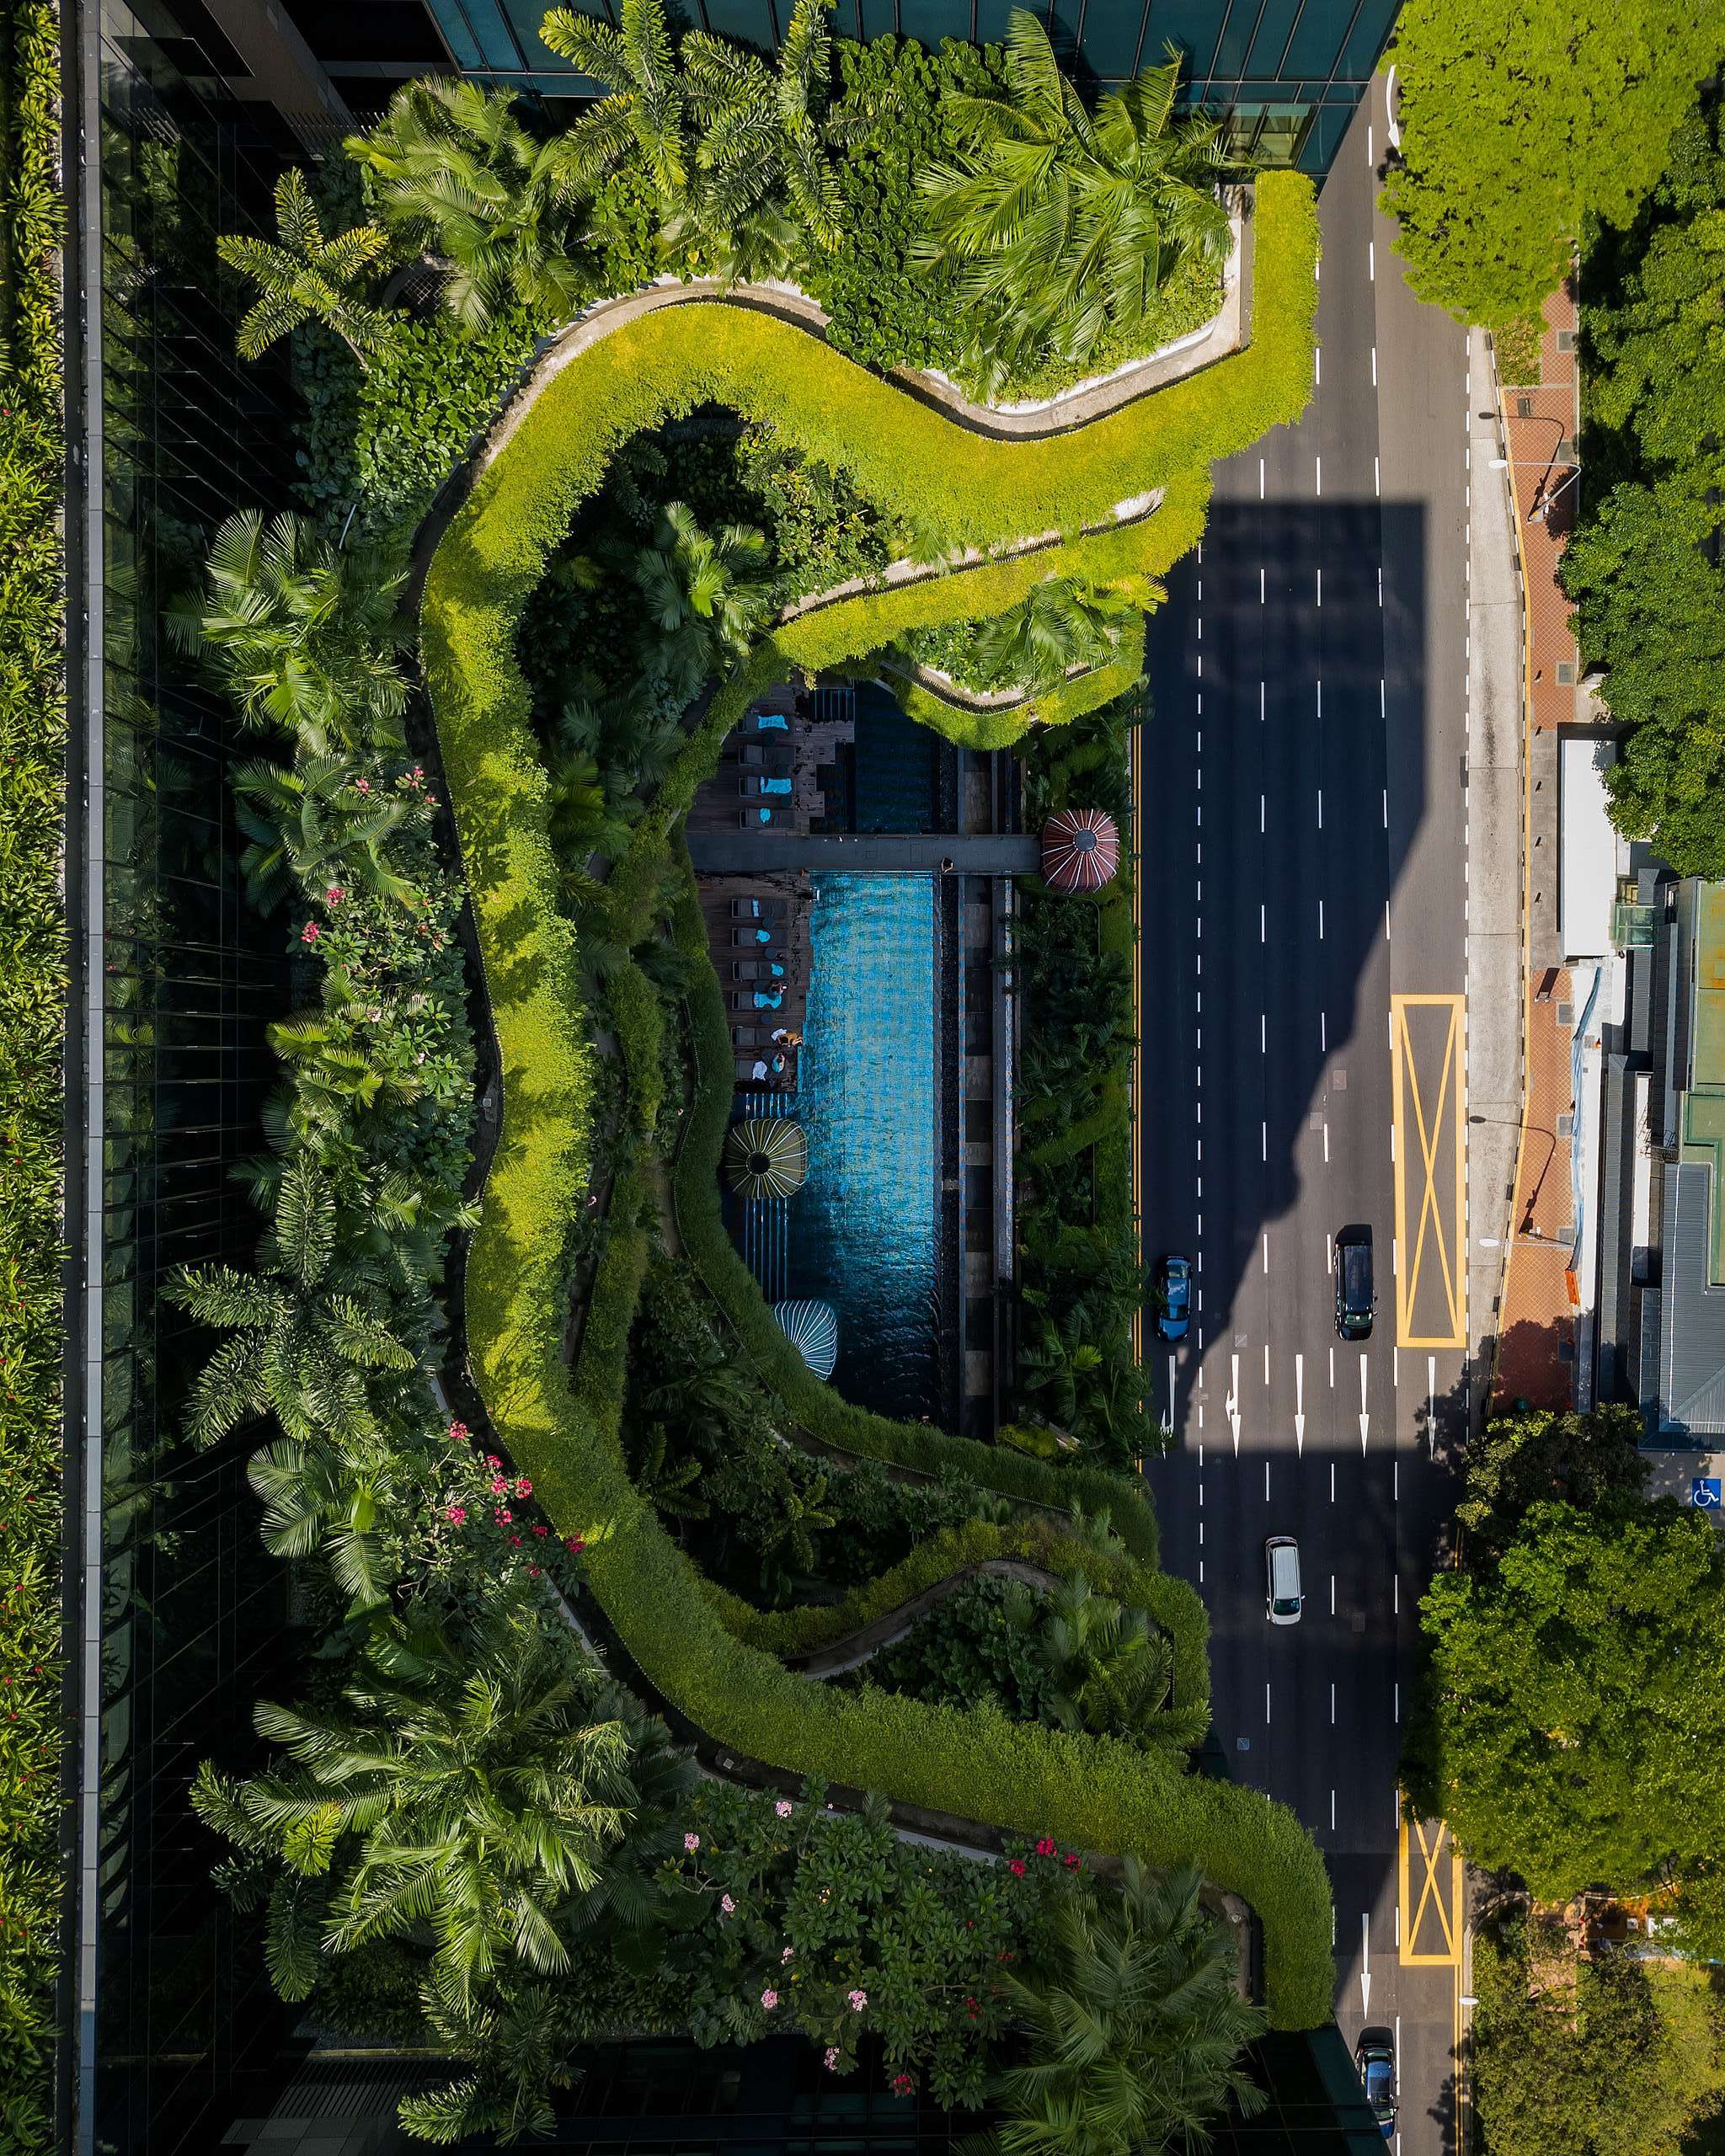 皮克林賓樂雅酒店（PARKROYAL on Pickering）為全球知名綠建築，建物融合「垂直綠化」的概念，並使用太陽能供電系統和雨水收集器，節省的能源可為680個新加坡家庭提供一年的電力。